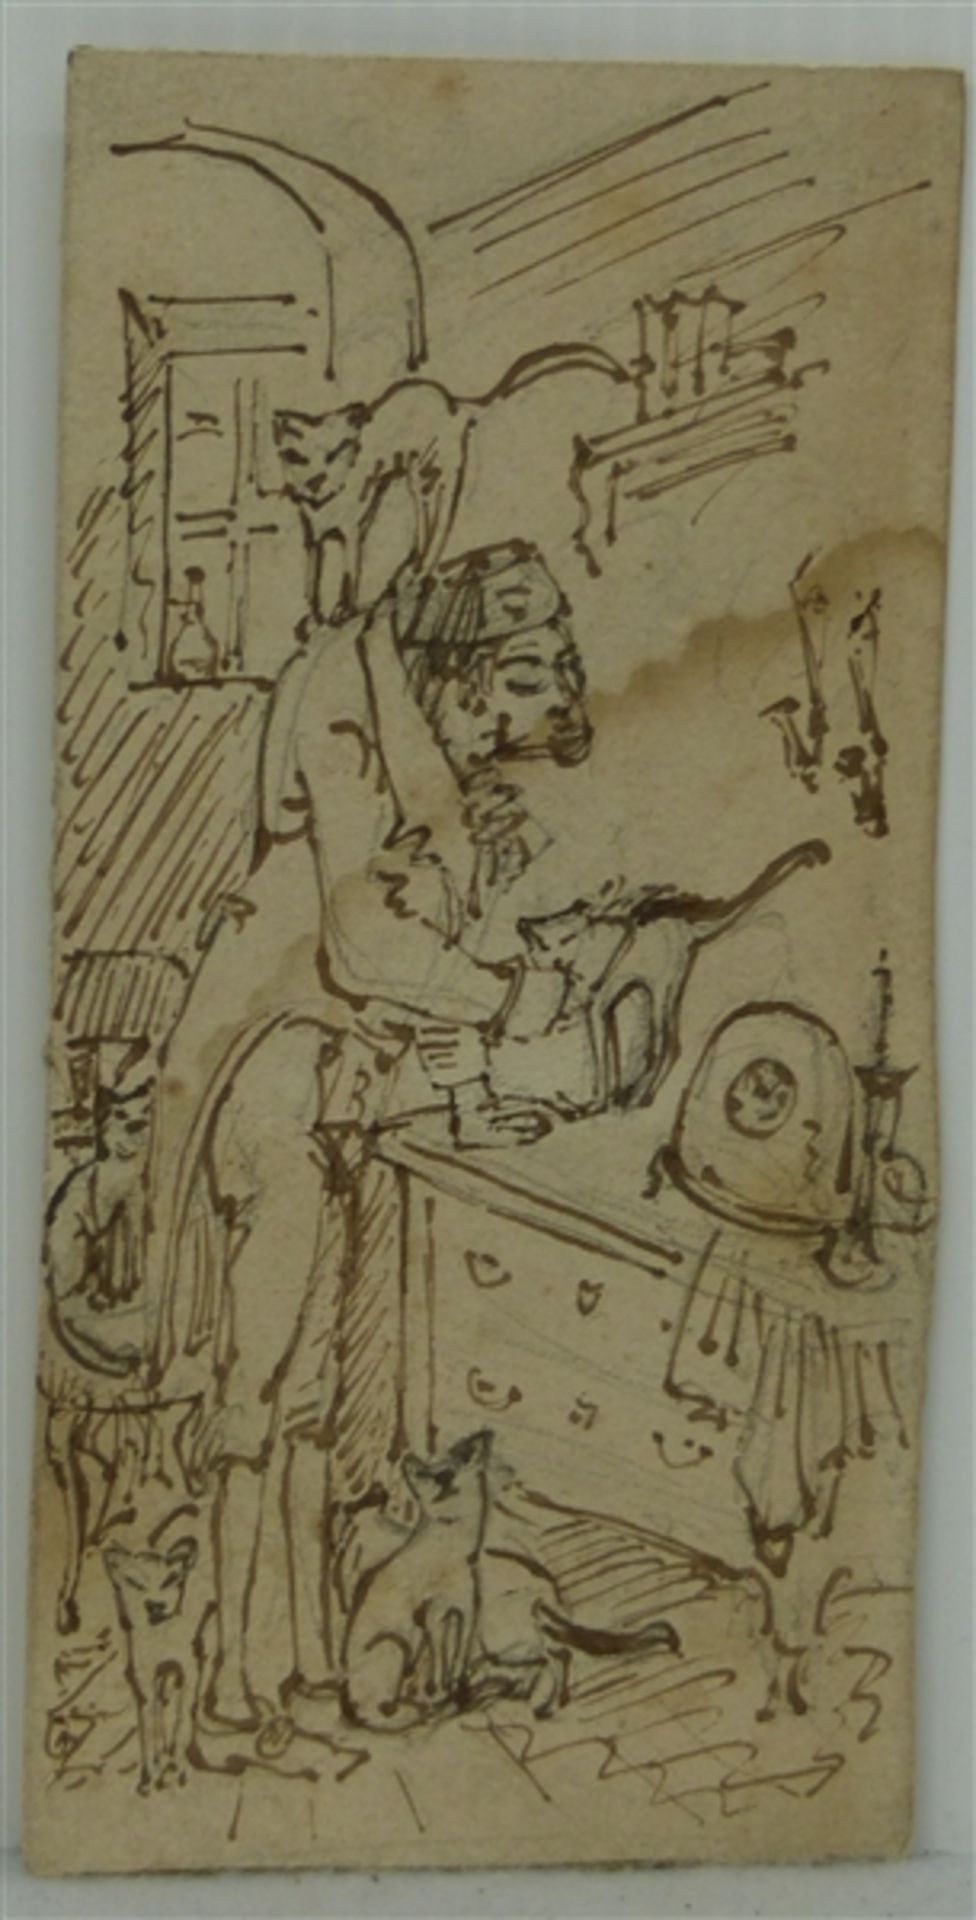 Zeichnung Carl Spitzweg, zugeschrieben, "Der Katzenfreund", Federzeichnung, Skizze, 13,5x6,5 cm,